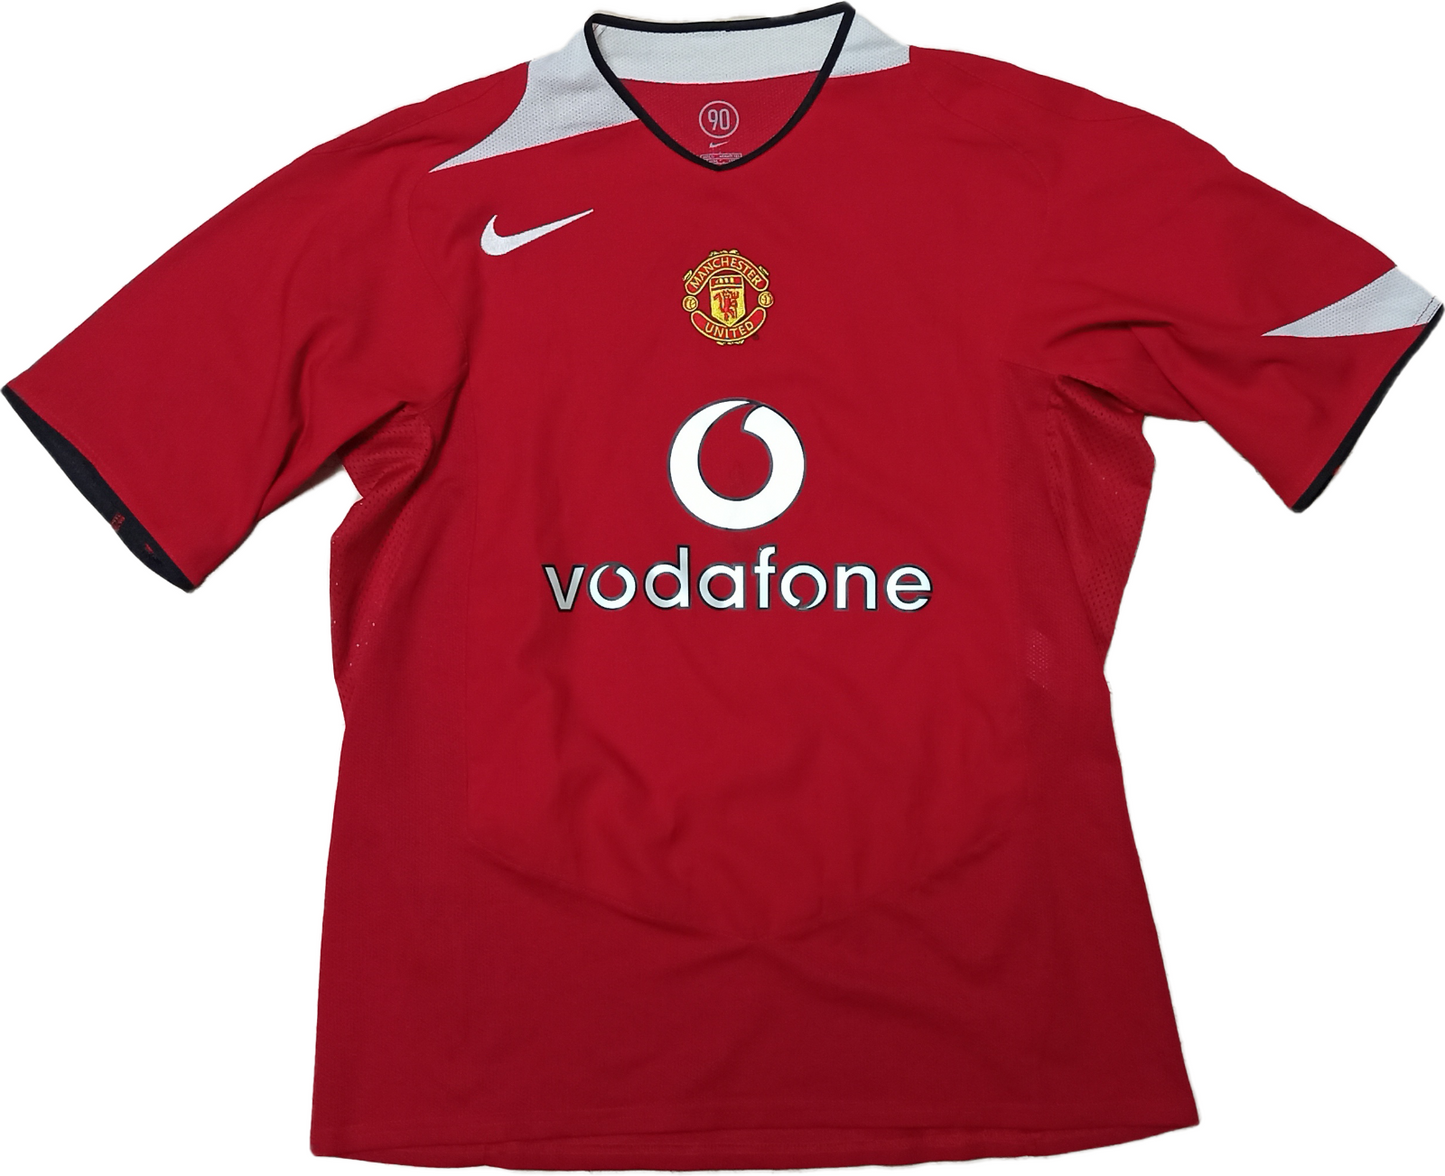 maglia Cristiano Ronaldo manchester united 2004 2005 Vodafone signed jersey